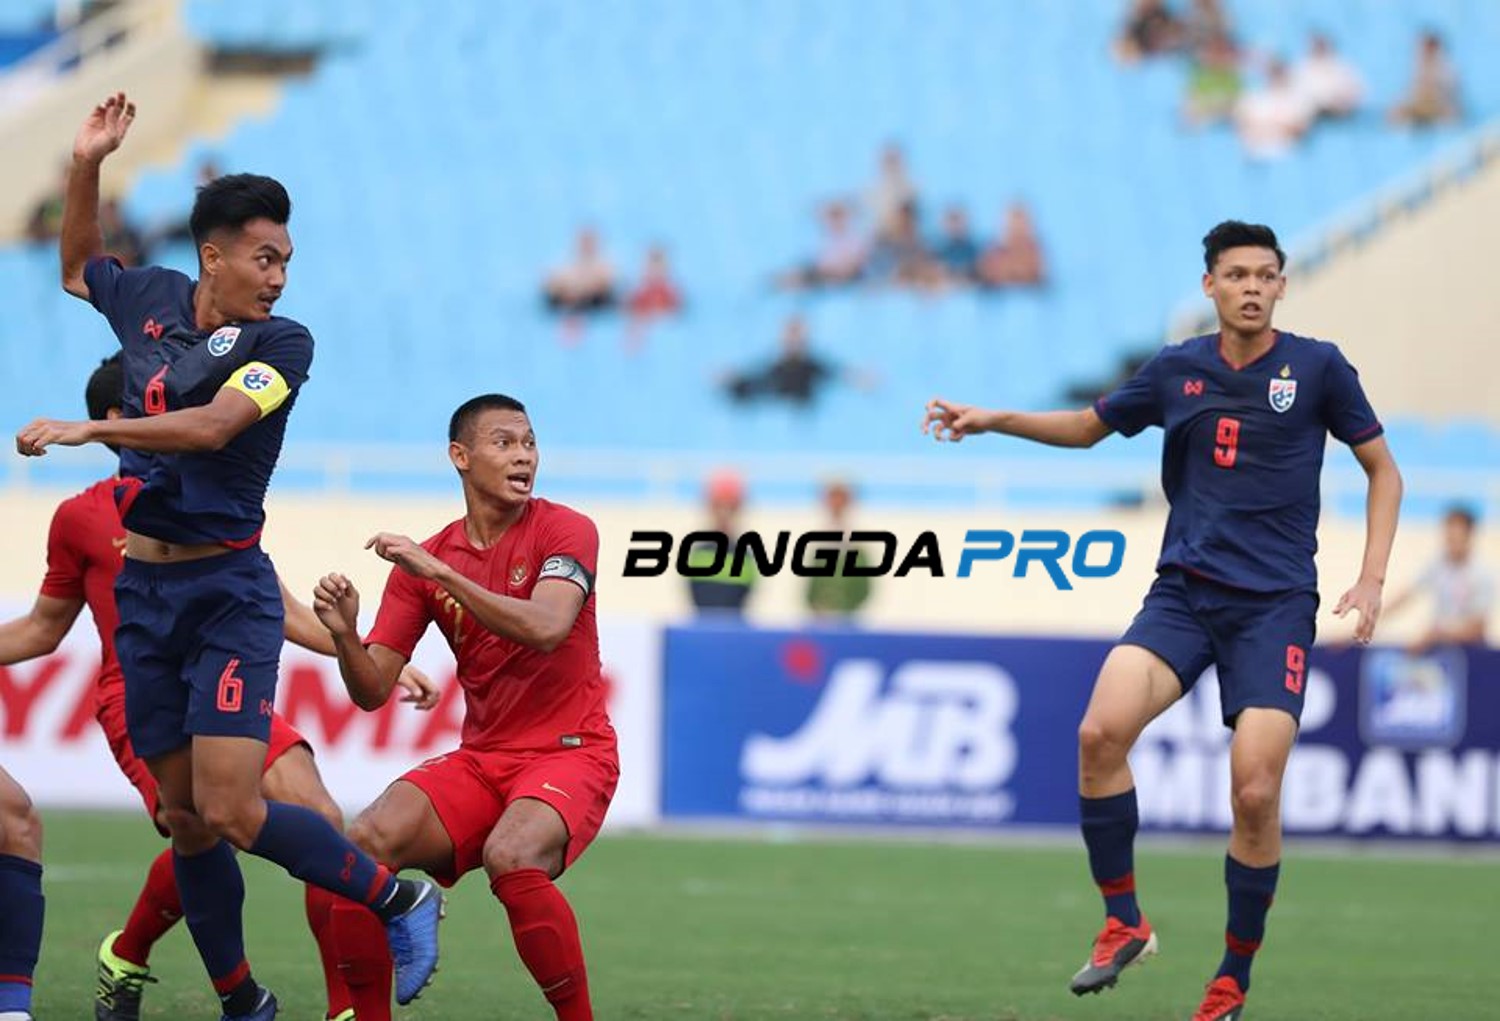 Kết quả U23 Thái Lan vs U23 Indonesia (FT 4-0): Supachai lập cú đúp, Indonesia hiện nguyên hình